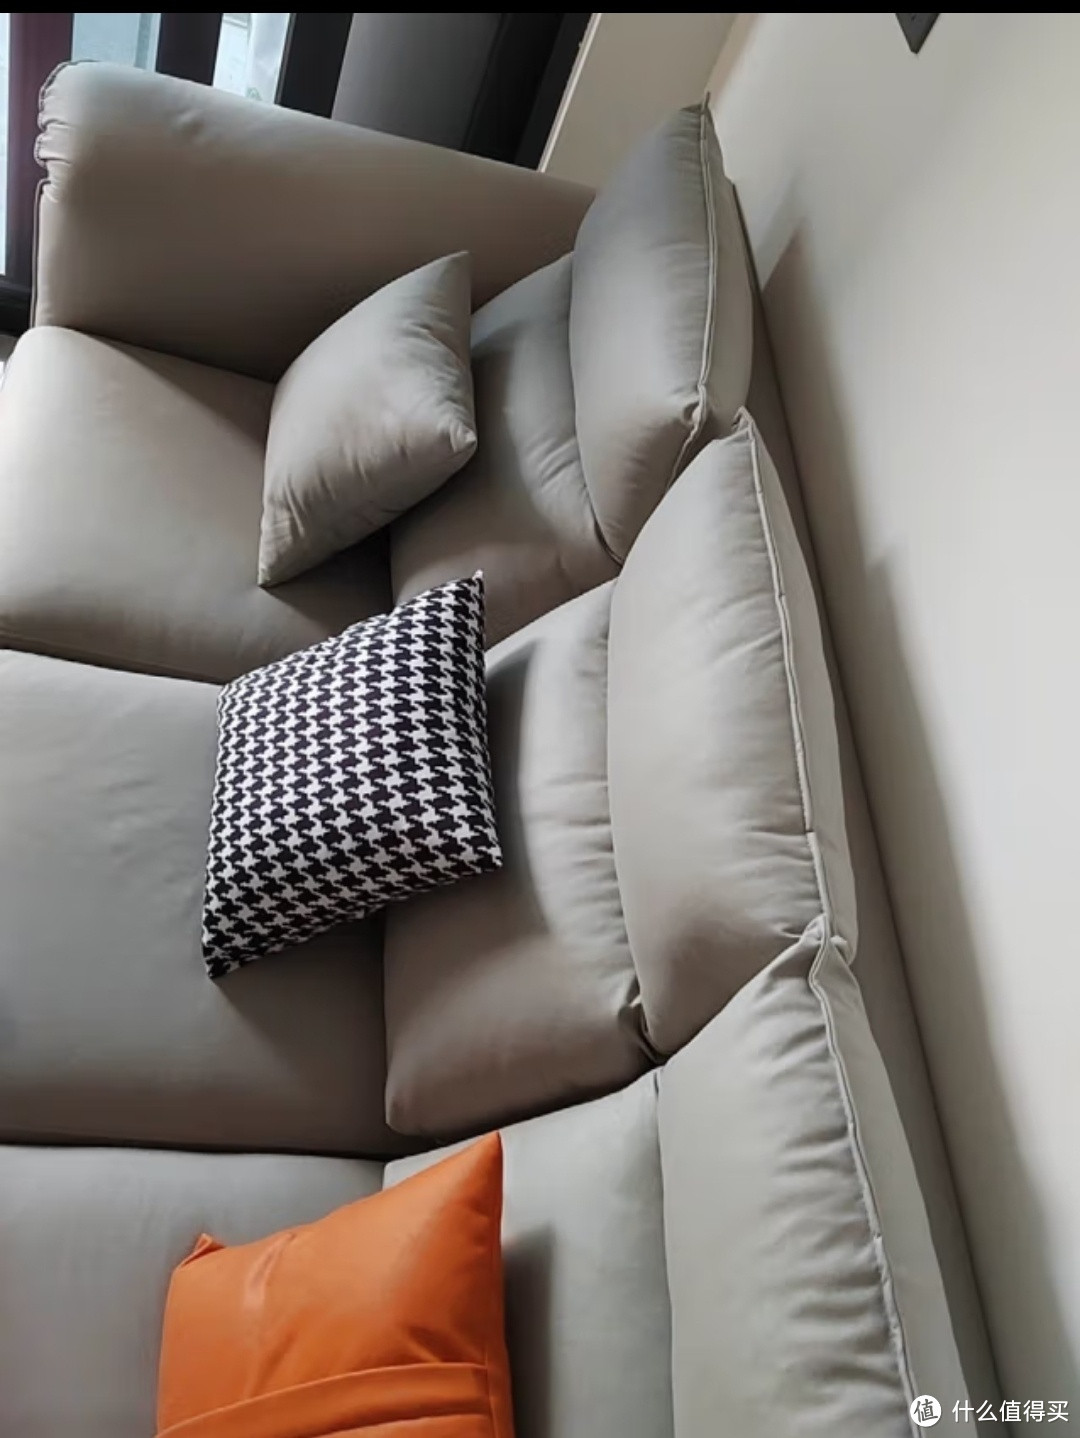 分享几款漂亮的沙发。